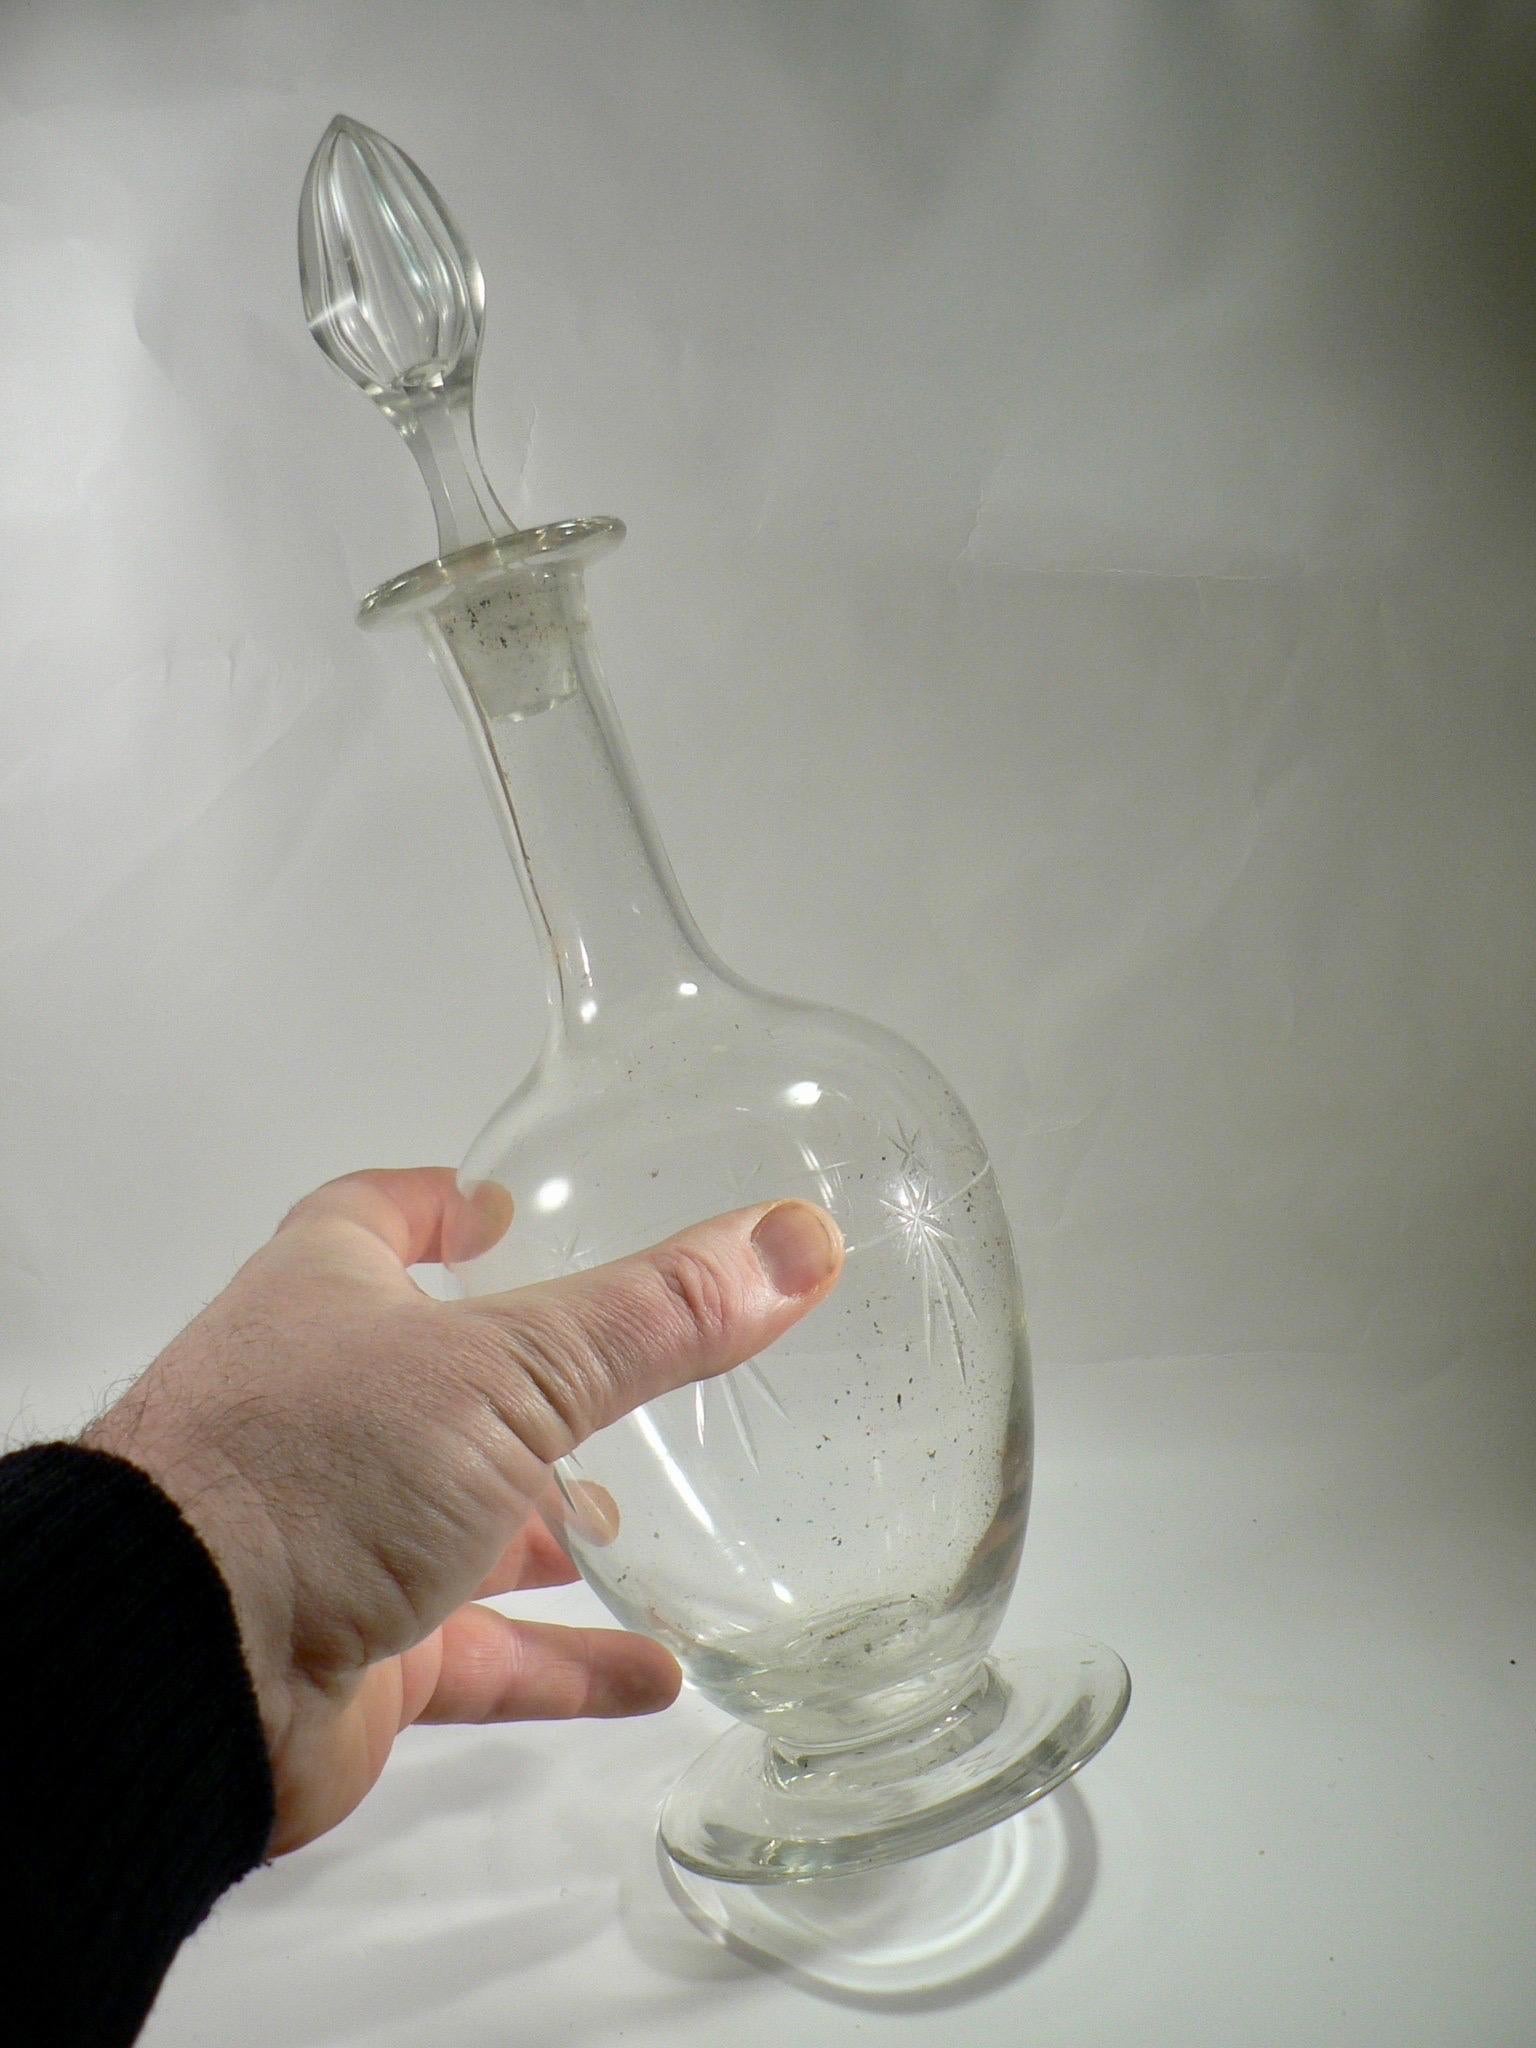 Klassische Wasserkaraffe aus geblasenem und geschliffenem Glas - Frankreich, 19. Jahrhundert.

Gesamthöhe: 35cm.
